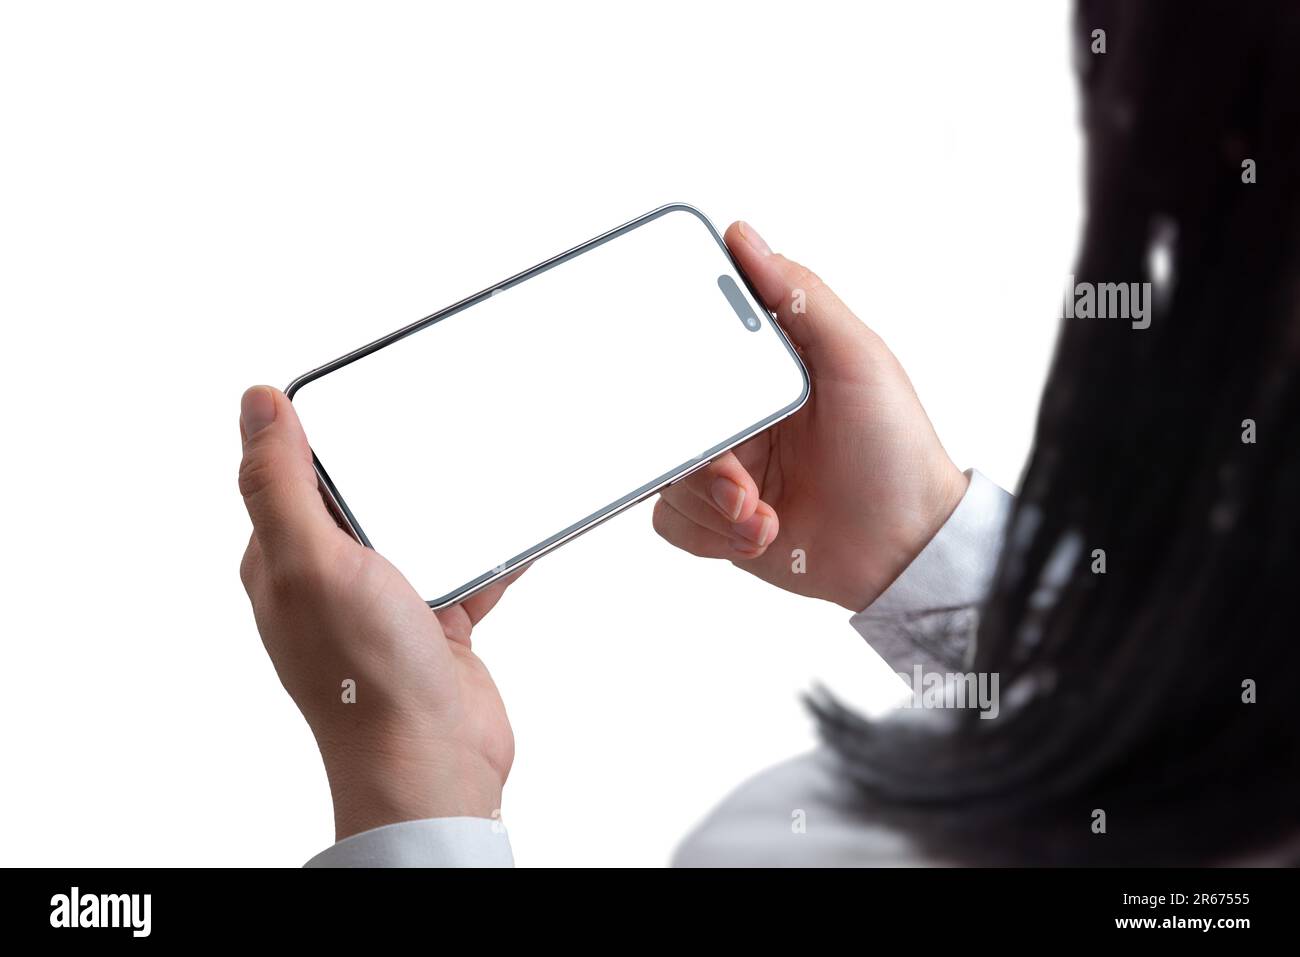 Frau, die das Smartphone in horizontaler Position hält. Isolierter Bildschirm und Hintergrund. Konzept der Wiedergabe von Filmen oder Spielen auf Mobiltelefonen Stockfoto